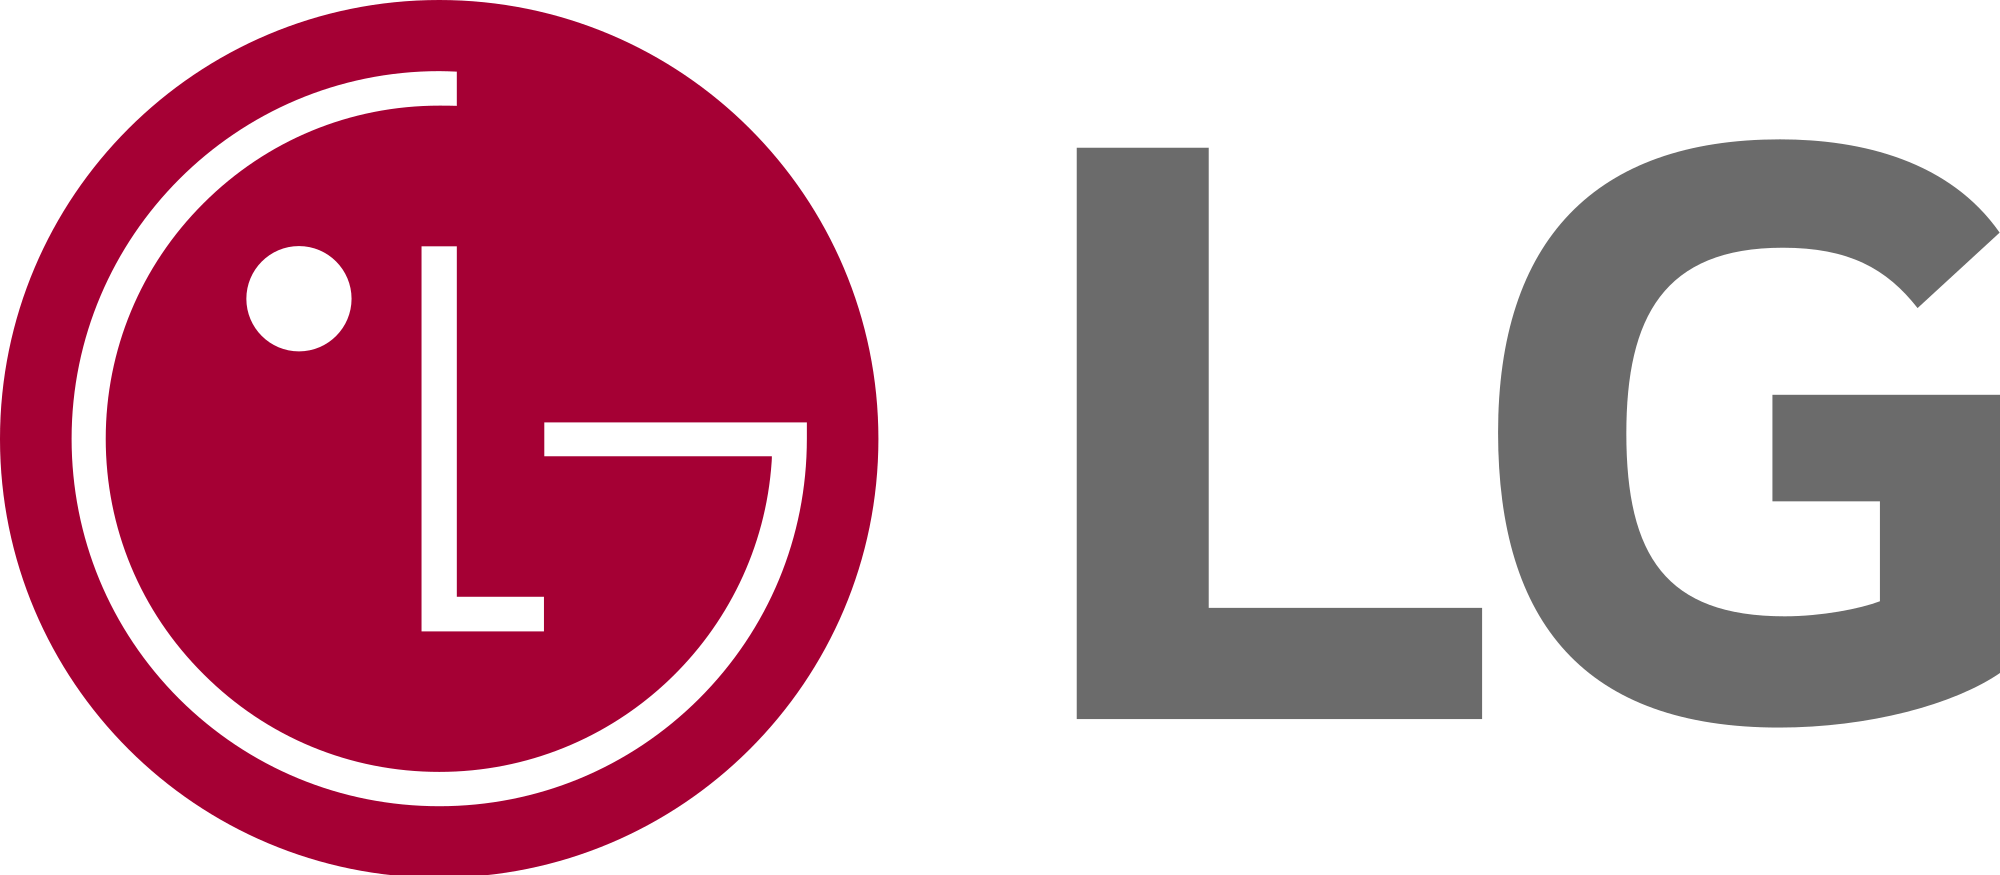 LG Logo - LG logo (2015).svg